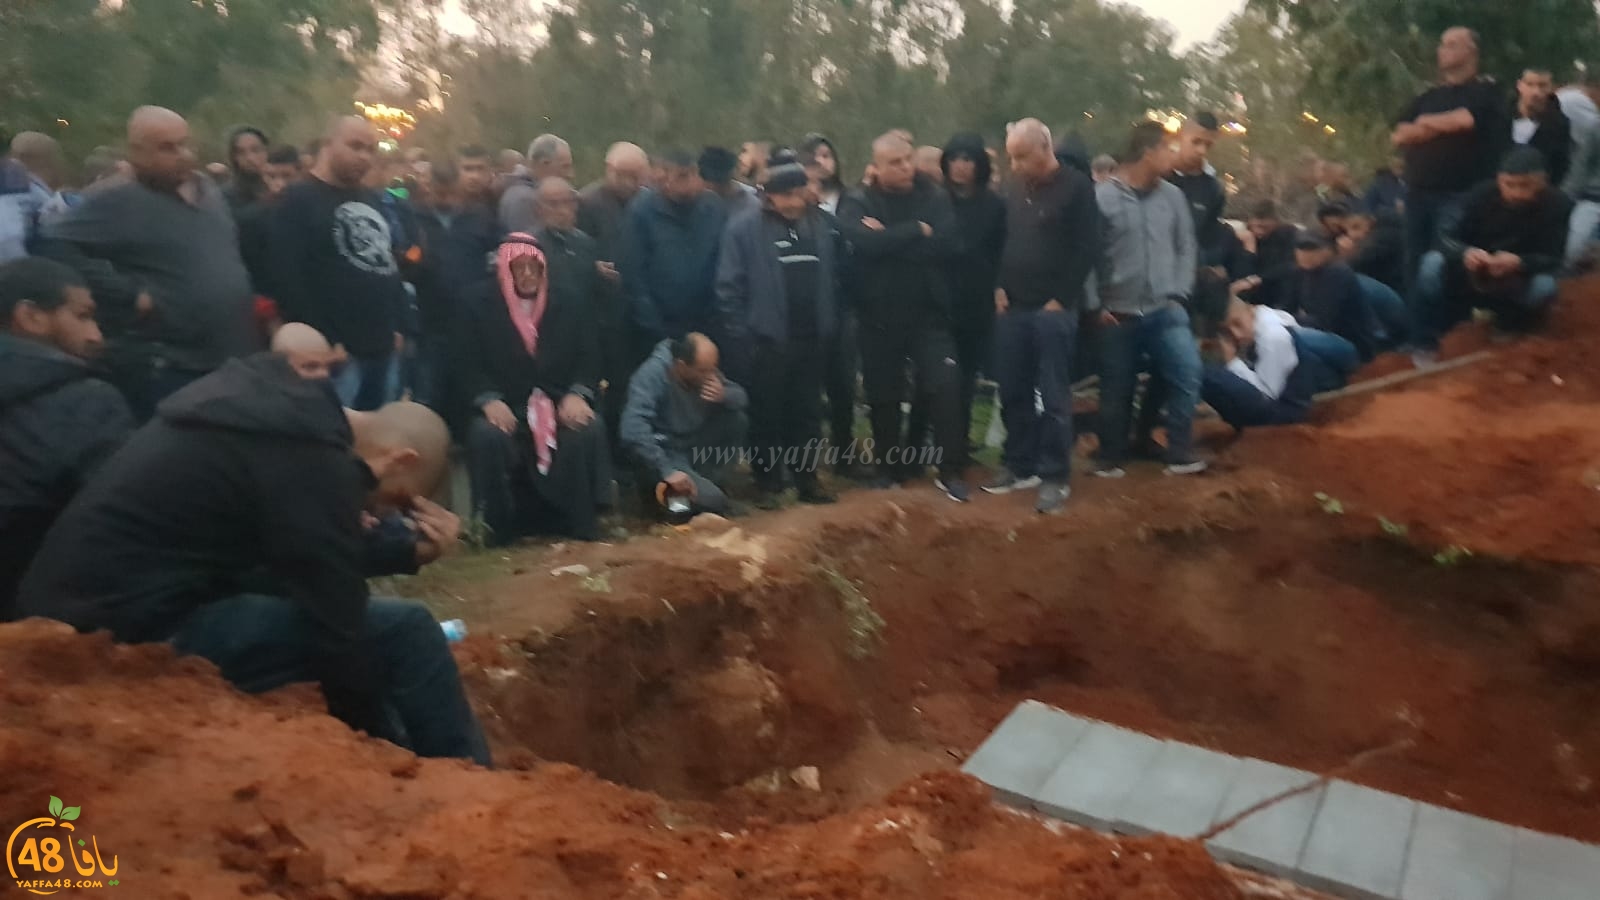 بالفيديو : مشاركة واسعة في تشييع جثمان السيد جدوع الزبارقة وزوجته آمنة باللد